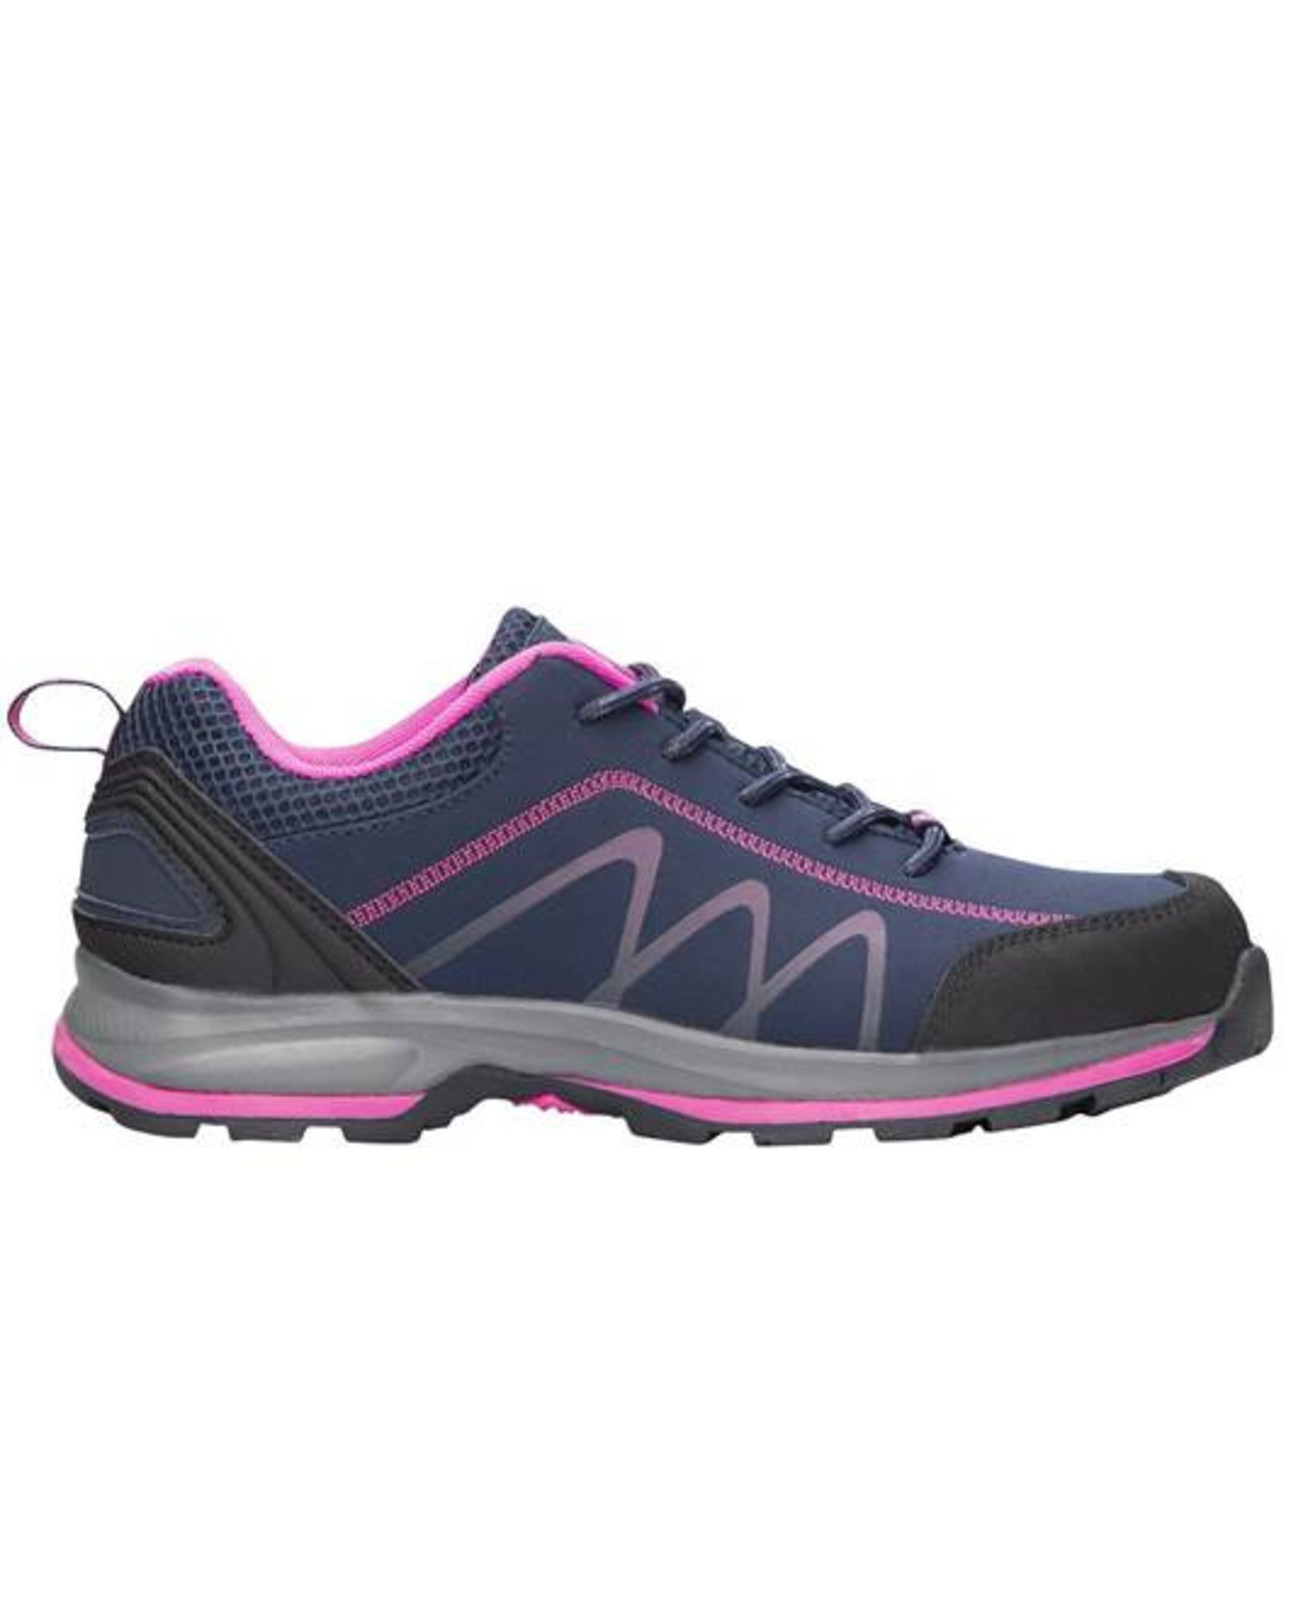 Dámska outdoor softshellová obuv Ardon Bloom - veľkosť: 41, farba: navy lila